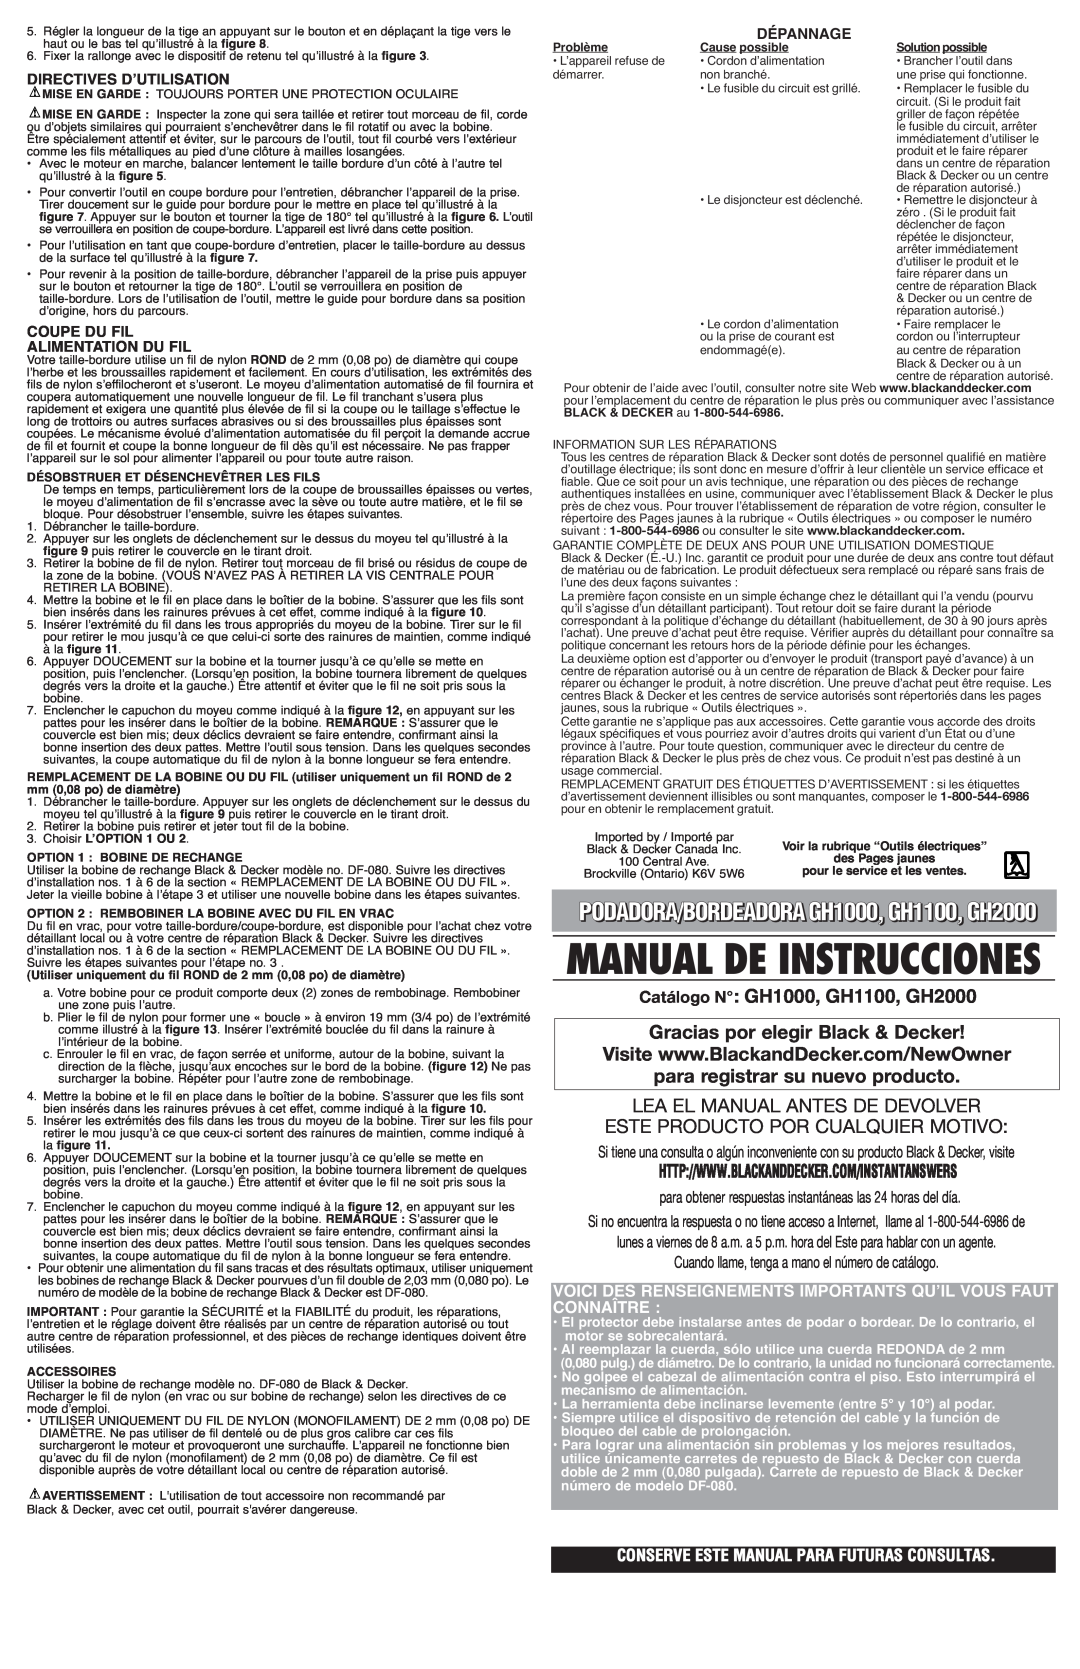 Black & Decker Manual De Instrucciones, Catálogo N GH1000, GH1100, GH2000, Gracias por elegir Black & Decker, Connaître 